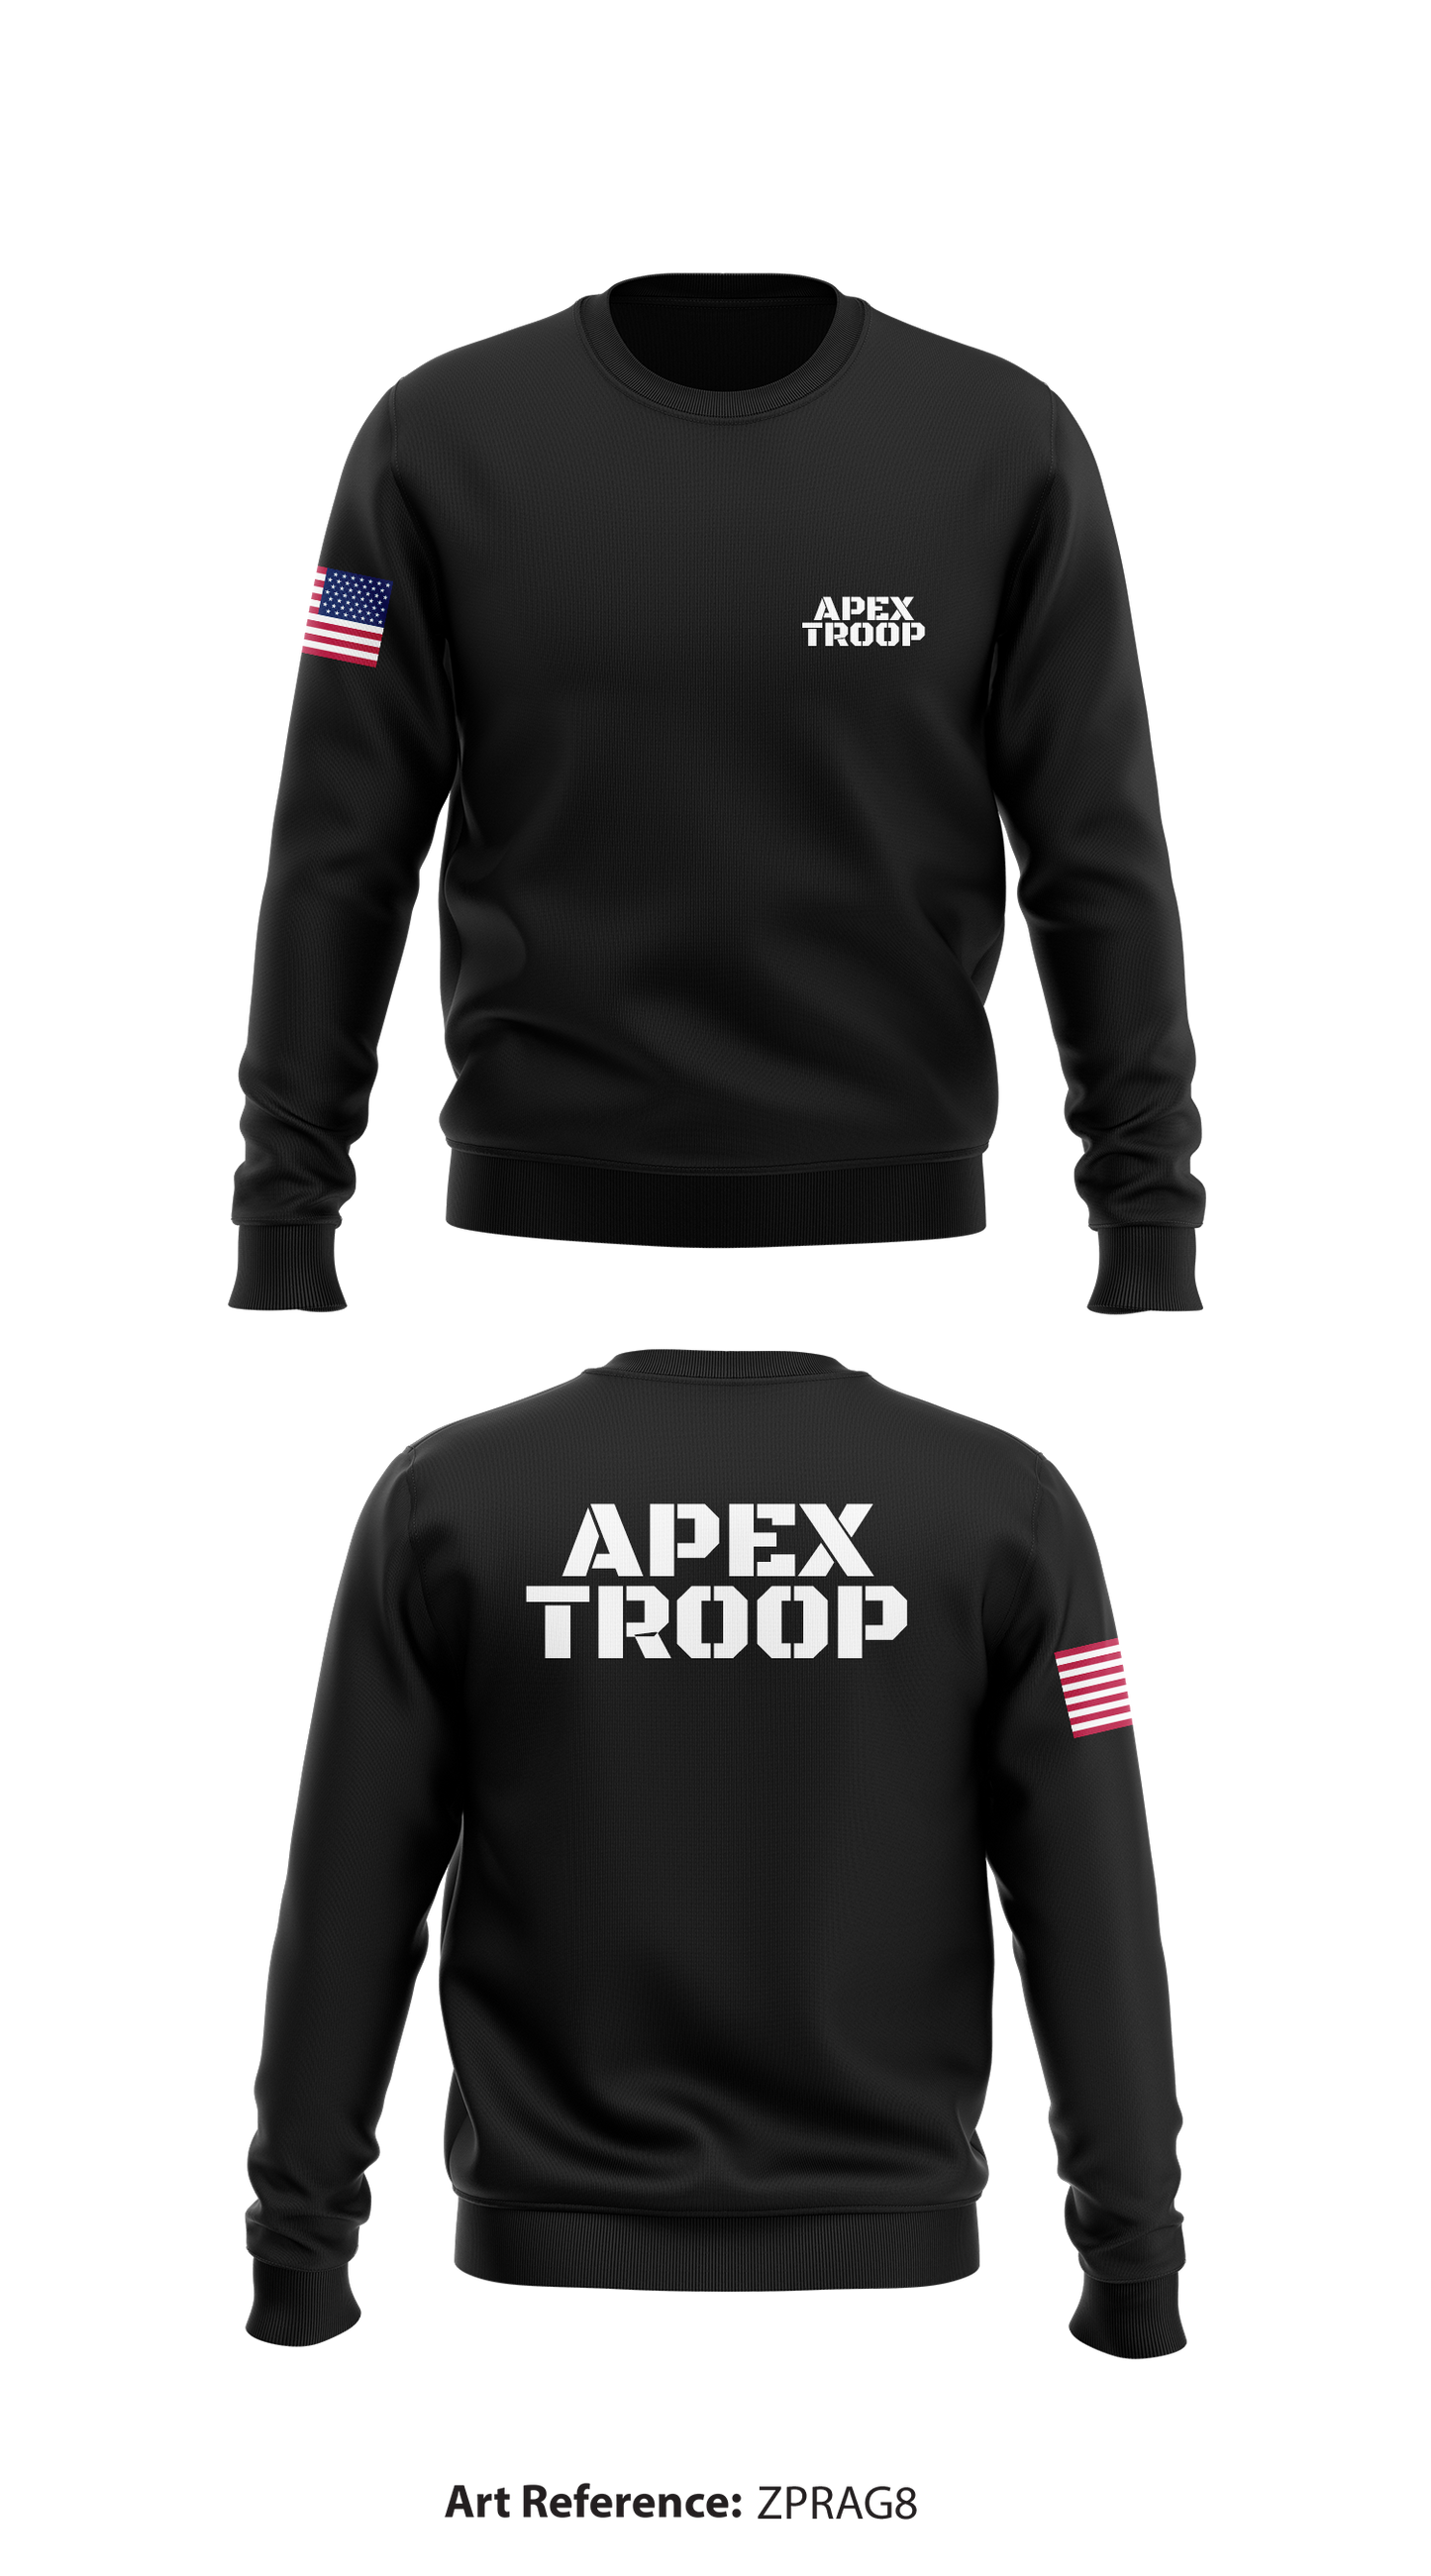 Apex troop Store 1 Core Men's Crewneck Performance Sweatshirt - ZPrag8